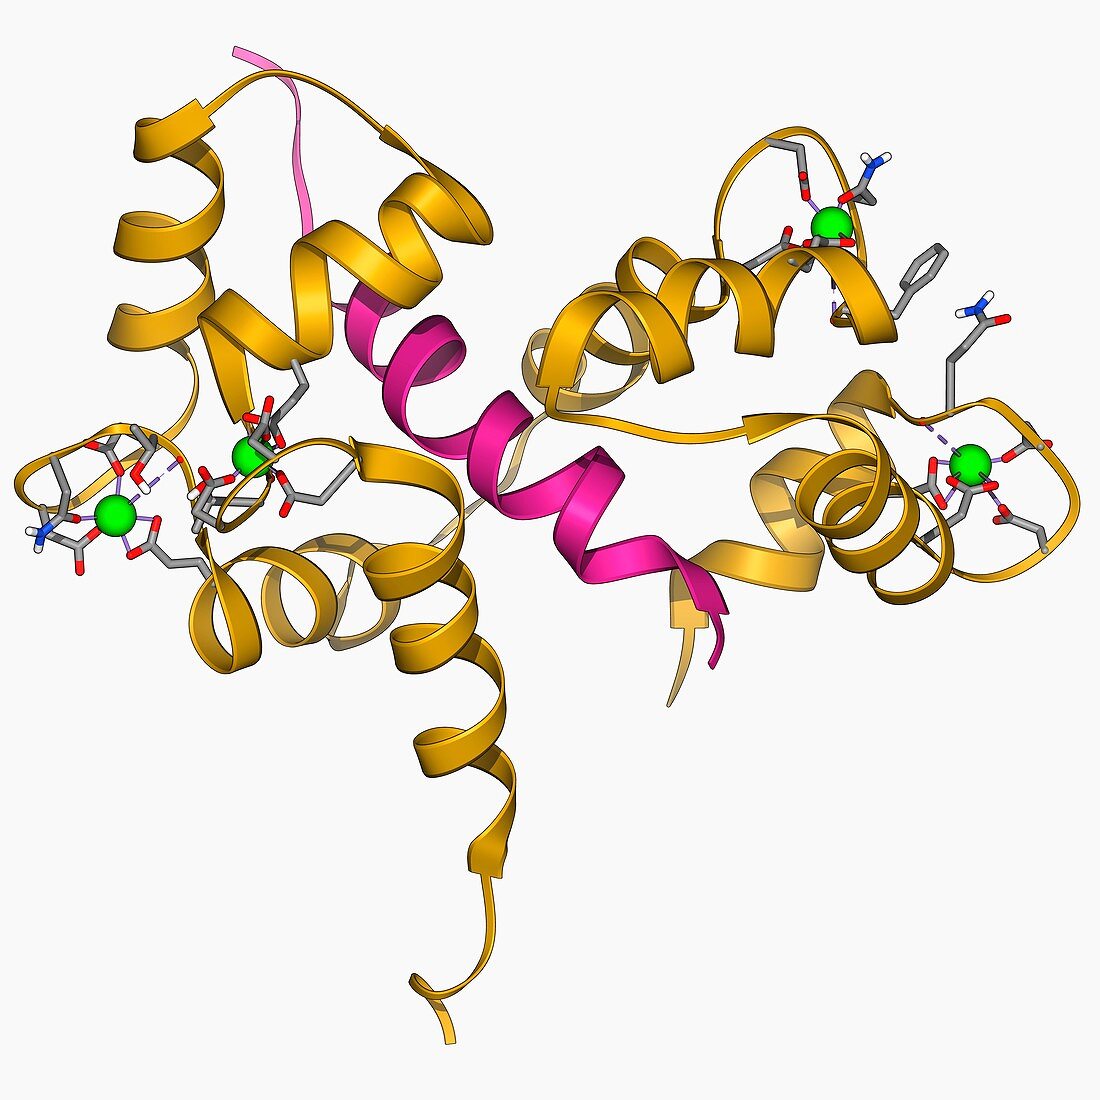 Calcium-binding protein molecule